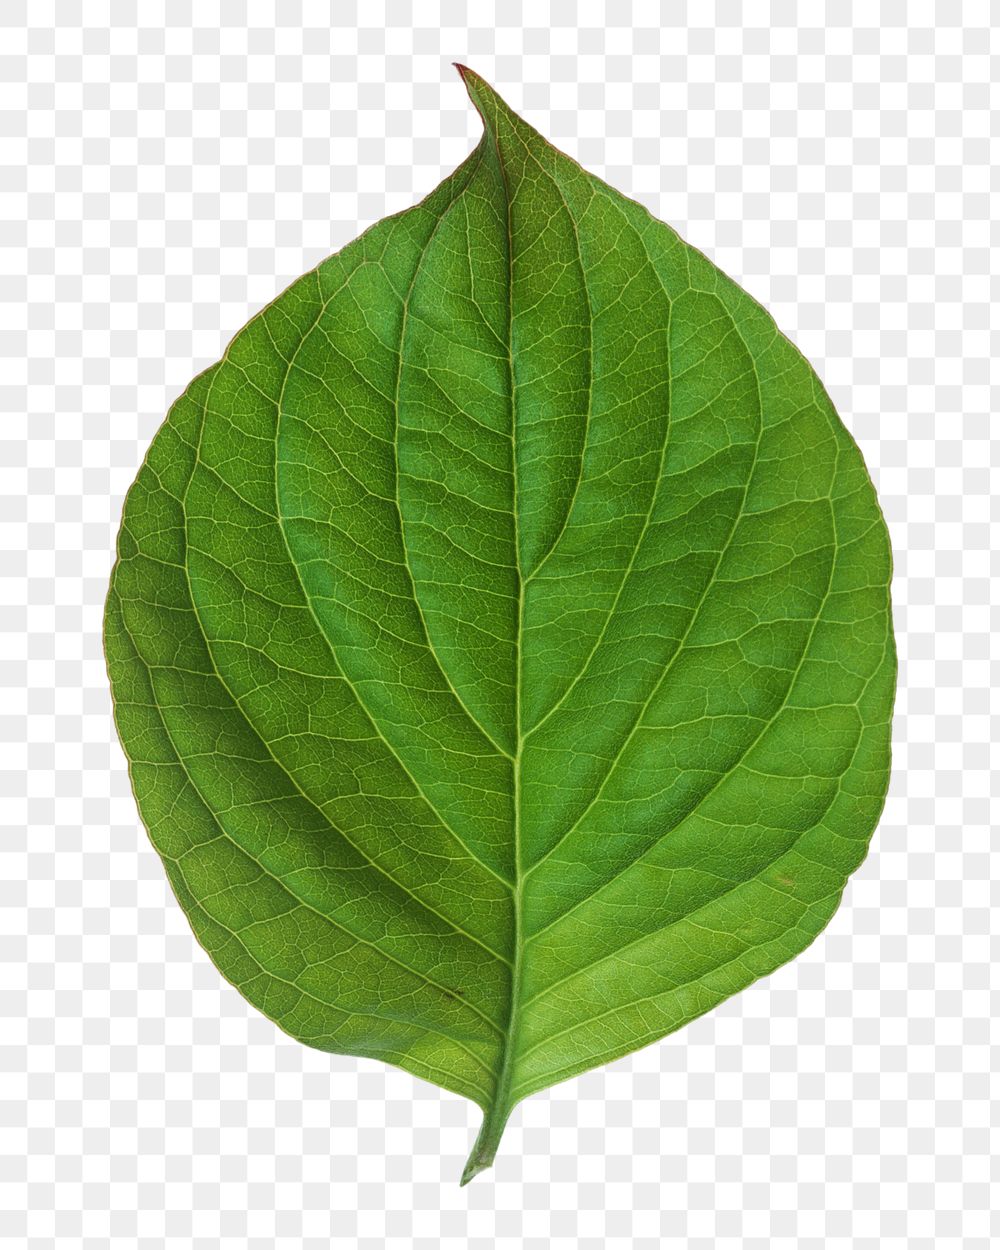 Green plant leaf png, transparent background